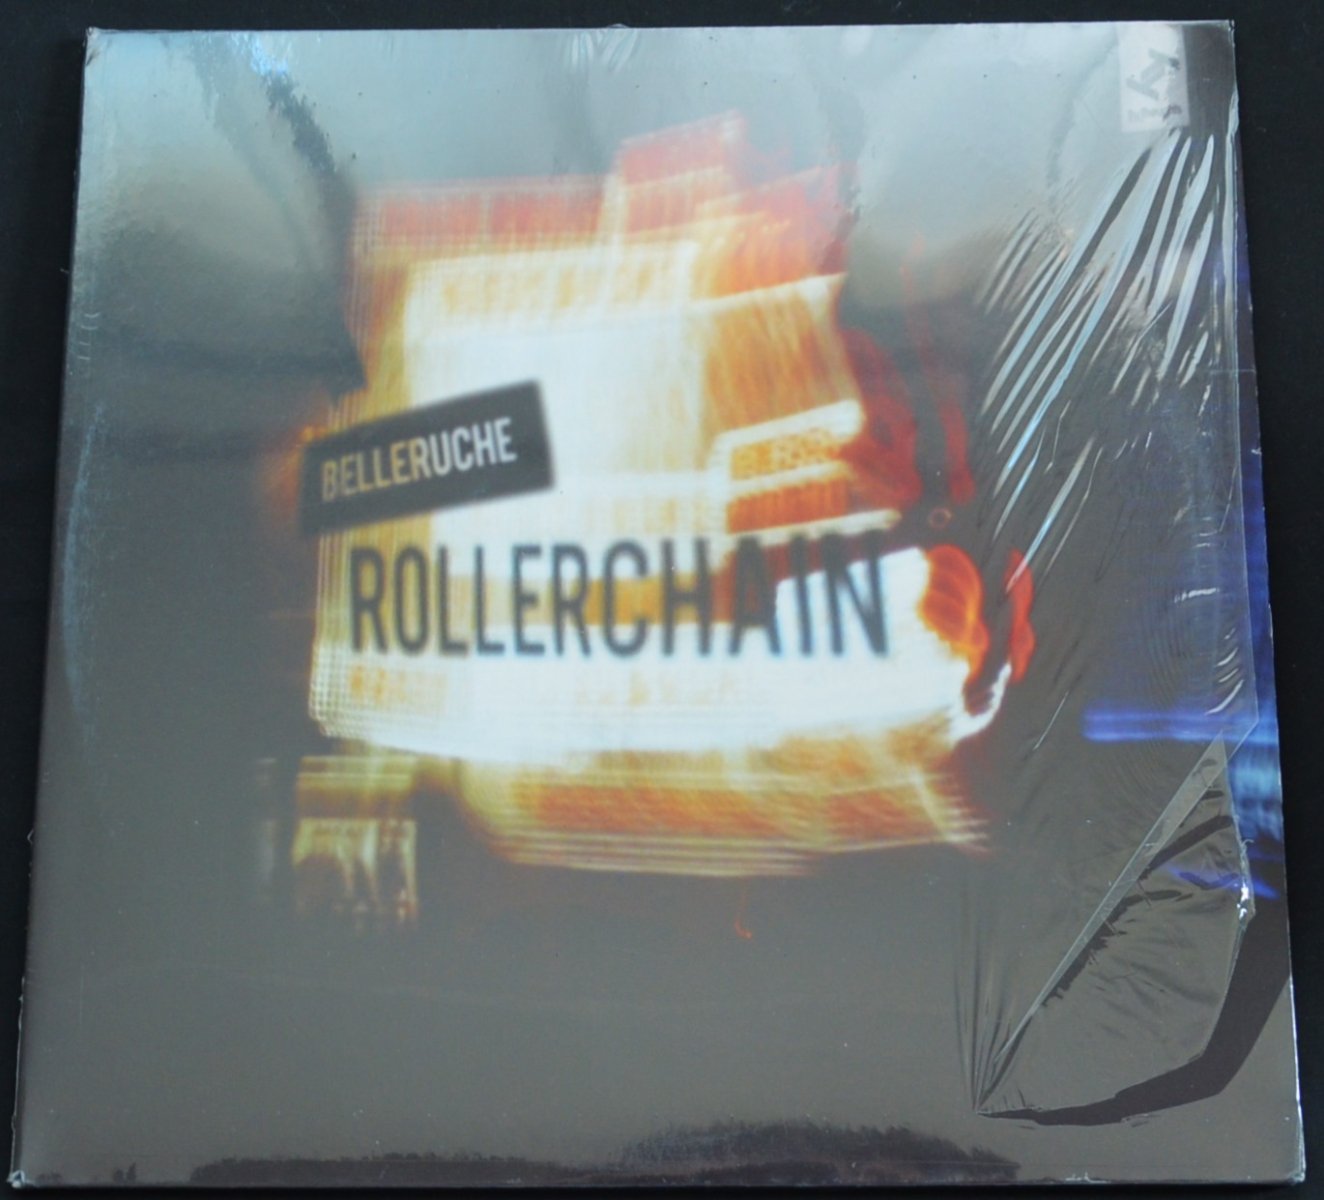 BELLERUCHE / ROLLERCHAIN (2LP)